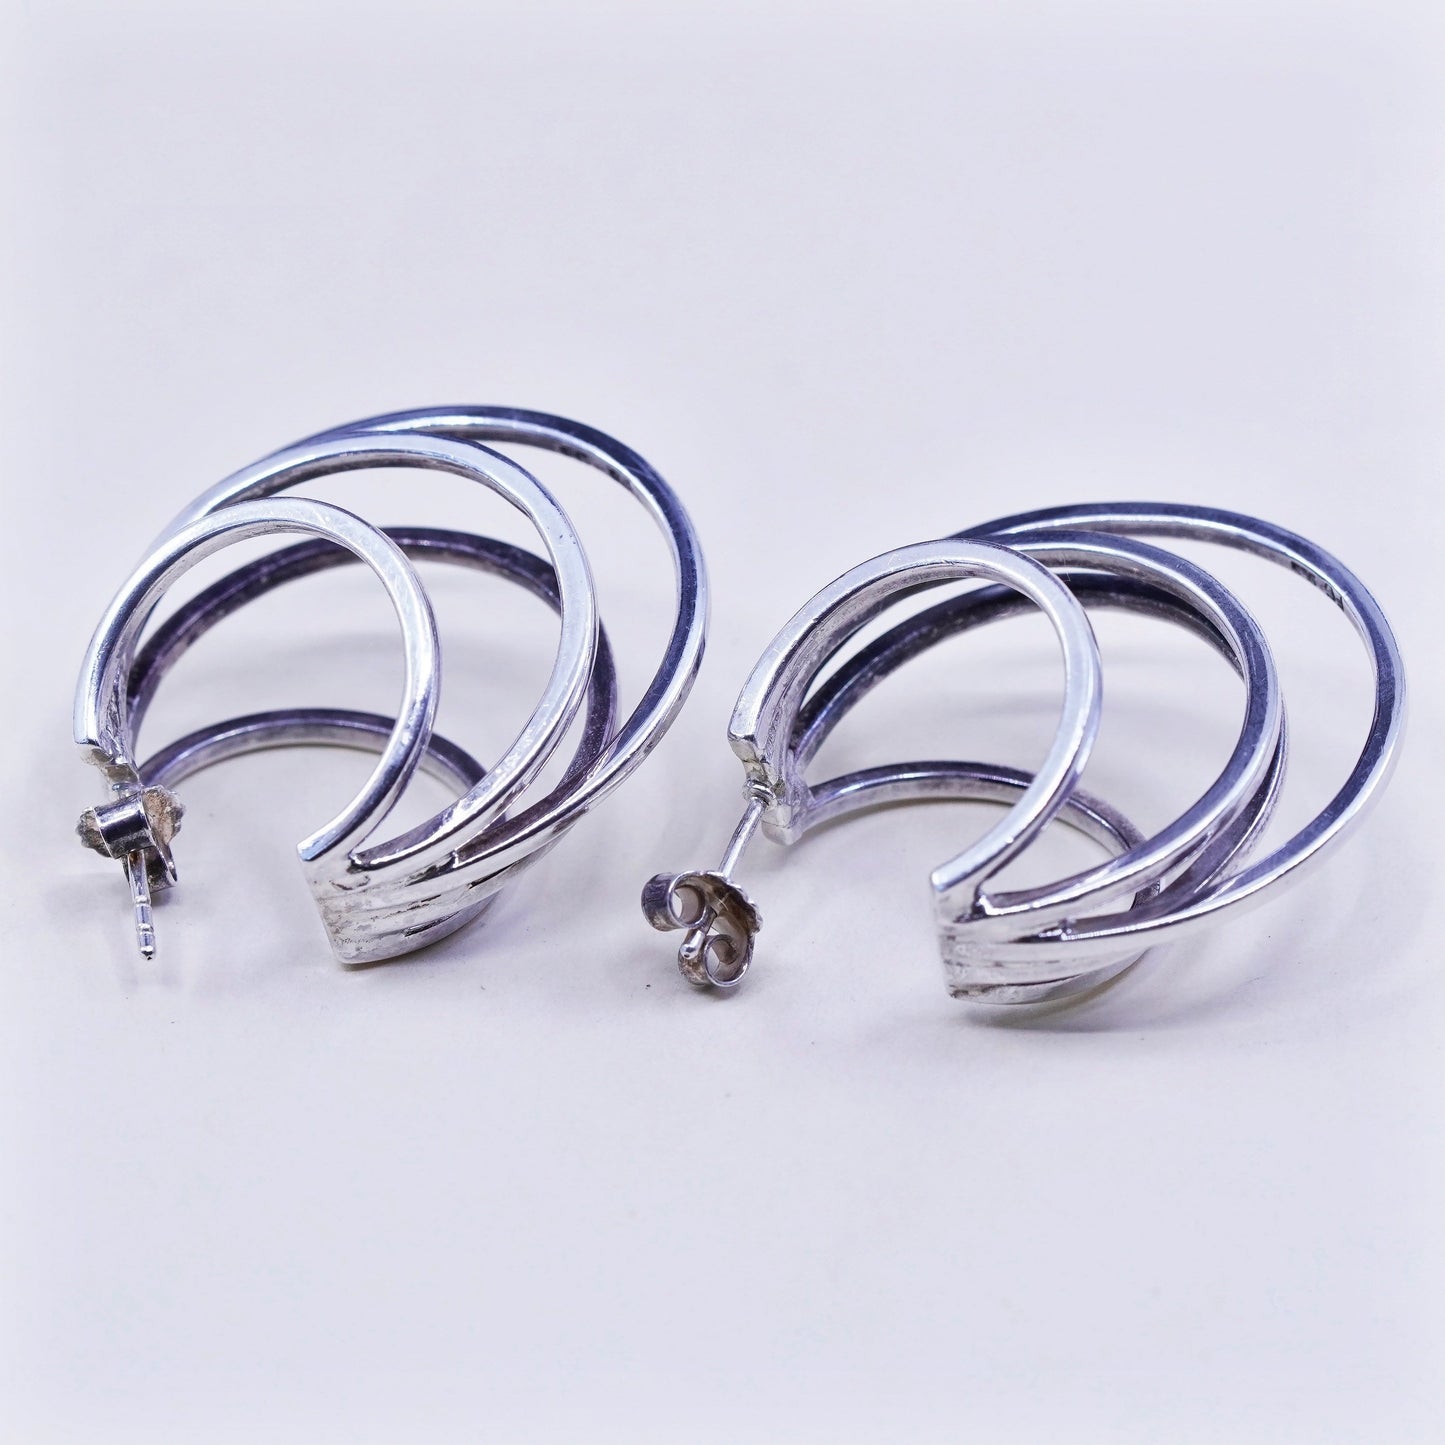 1.25”, Vintage Sterling silver handmade earrings, moon shaped 925 Huggie hoops